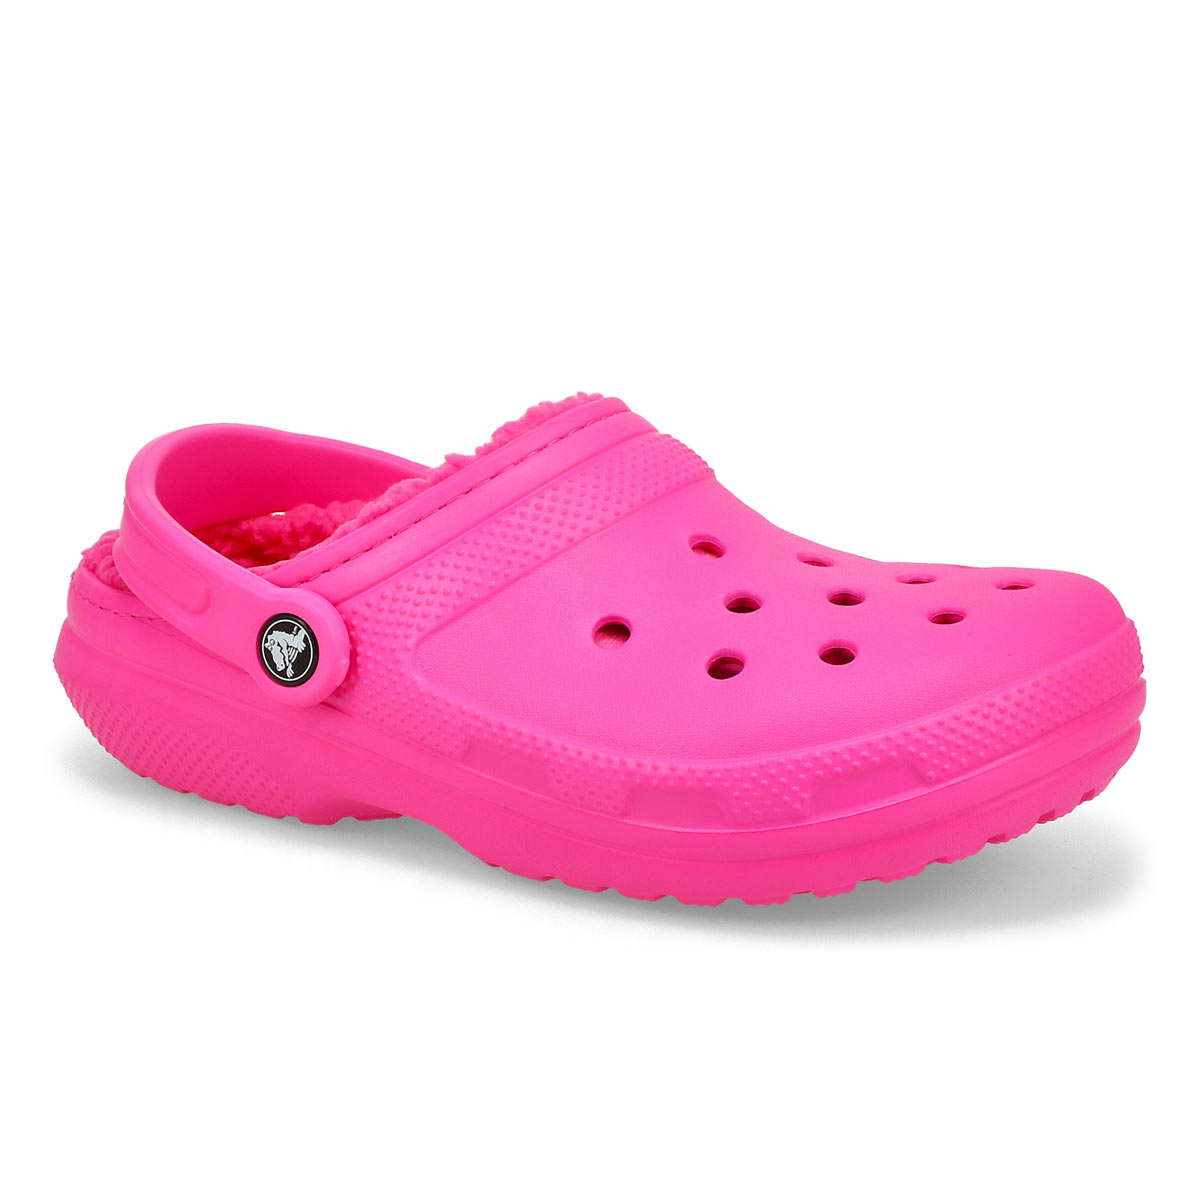 Crocs Women's Classic Lined Clog - Pink | SoftMoc.com